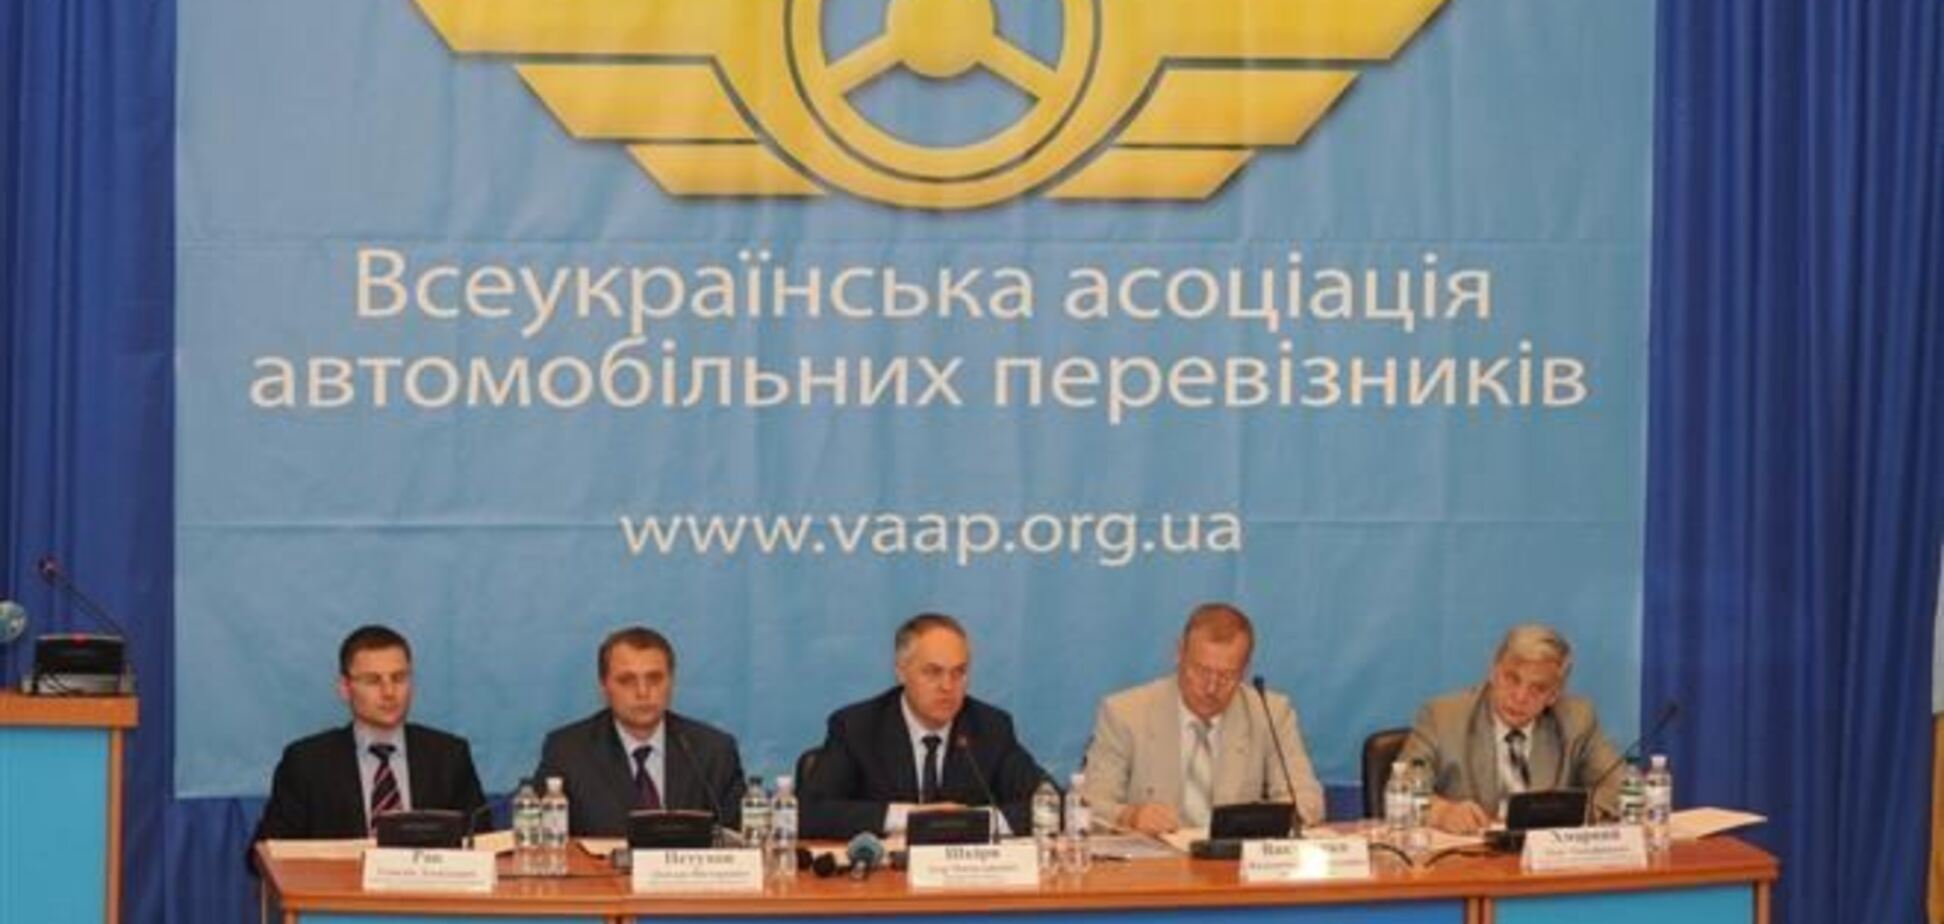 Асоціація автомобільних перевізників України співчуває сім'ям загиблим в ДТП на Сумщині